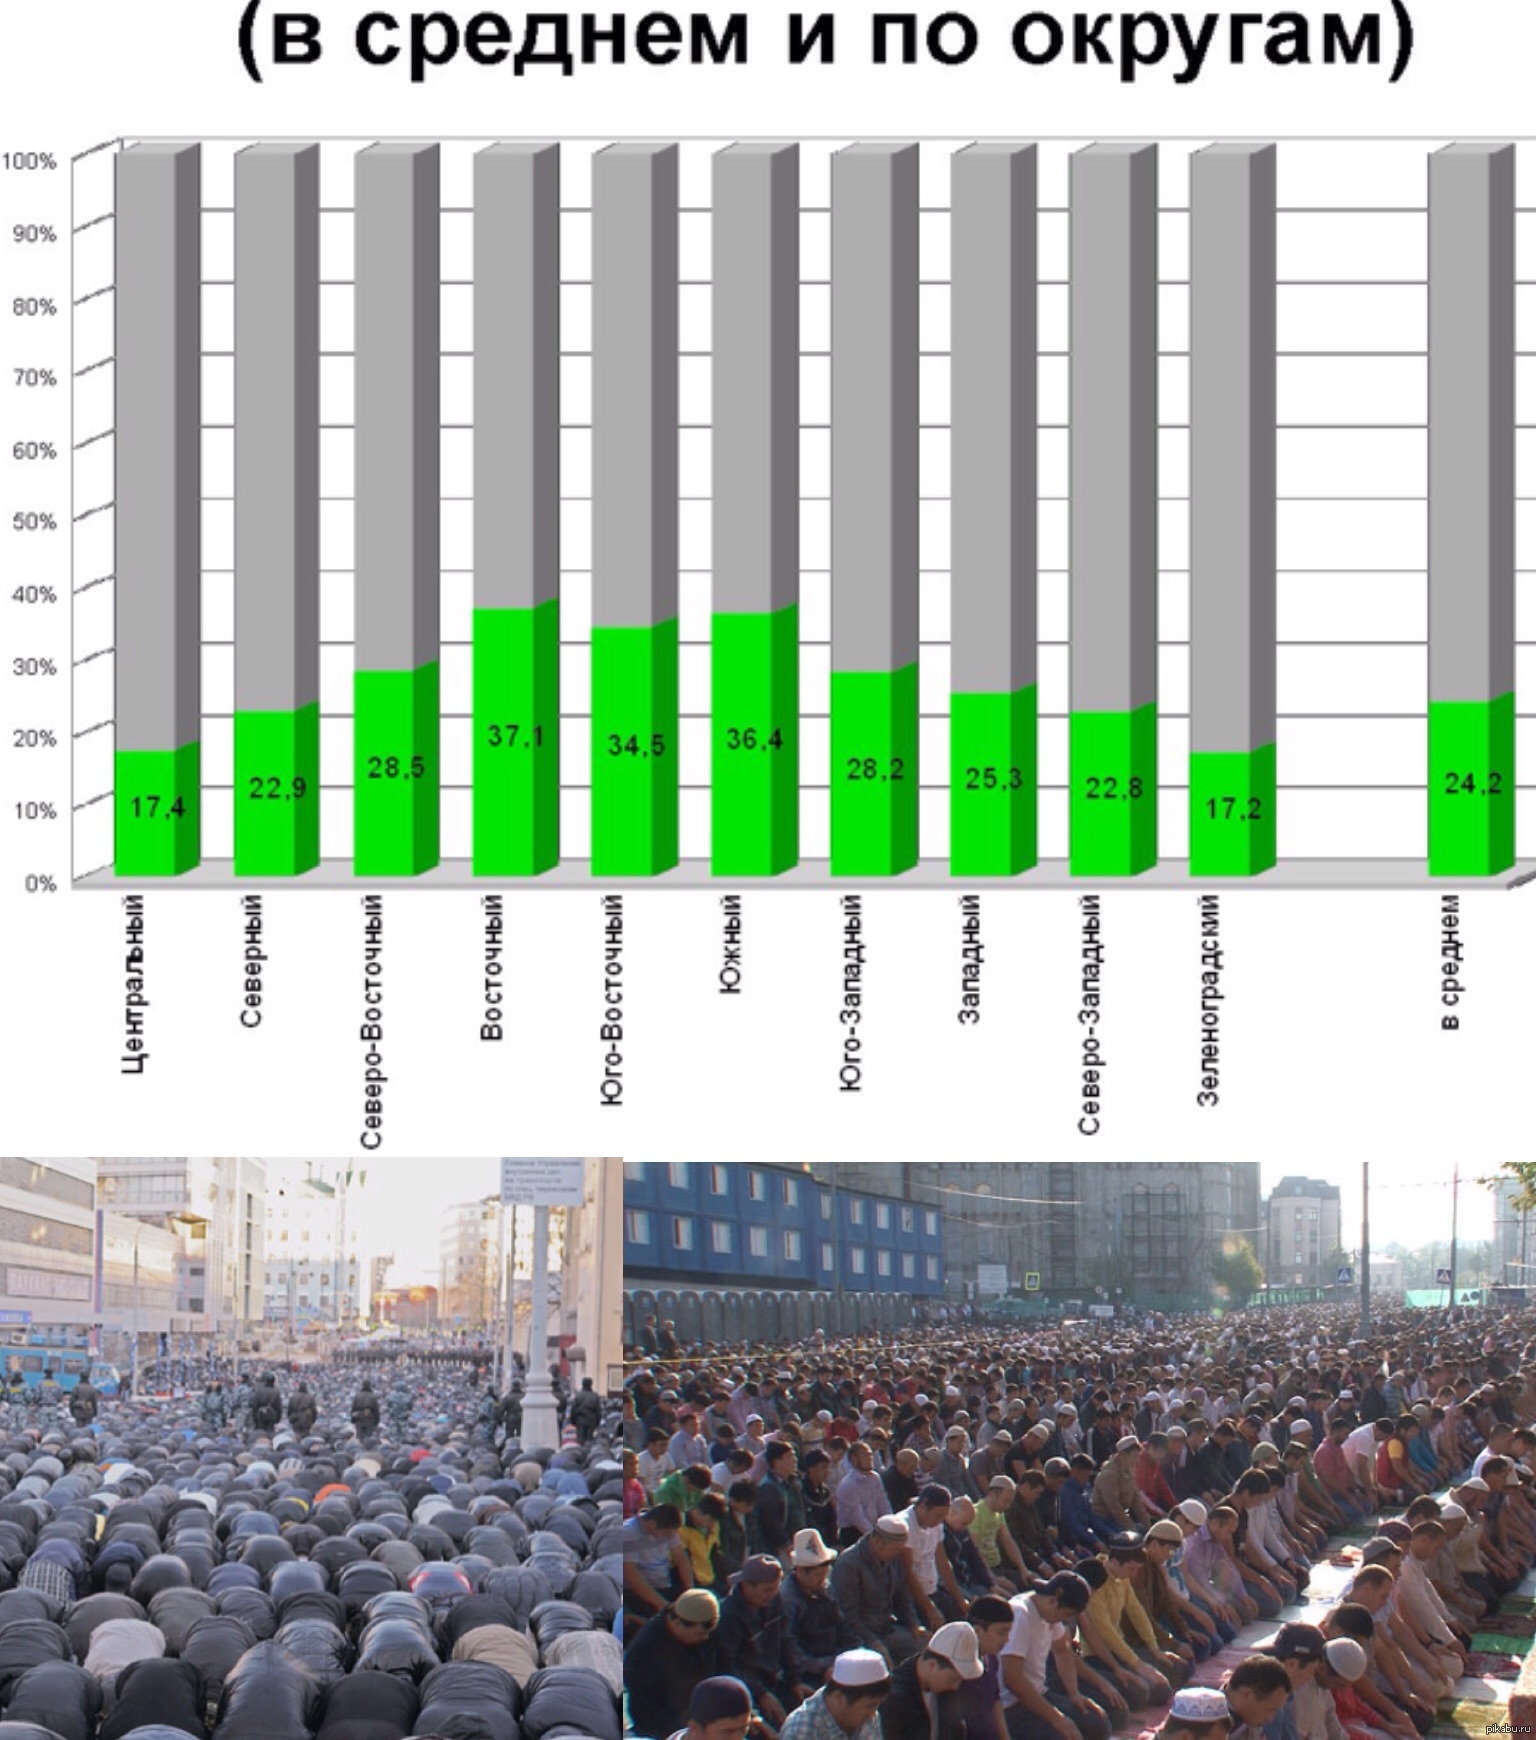 Какое количество мусульман. Численность мусульман в Москве. Число мусульман в России.